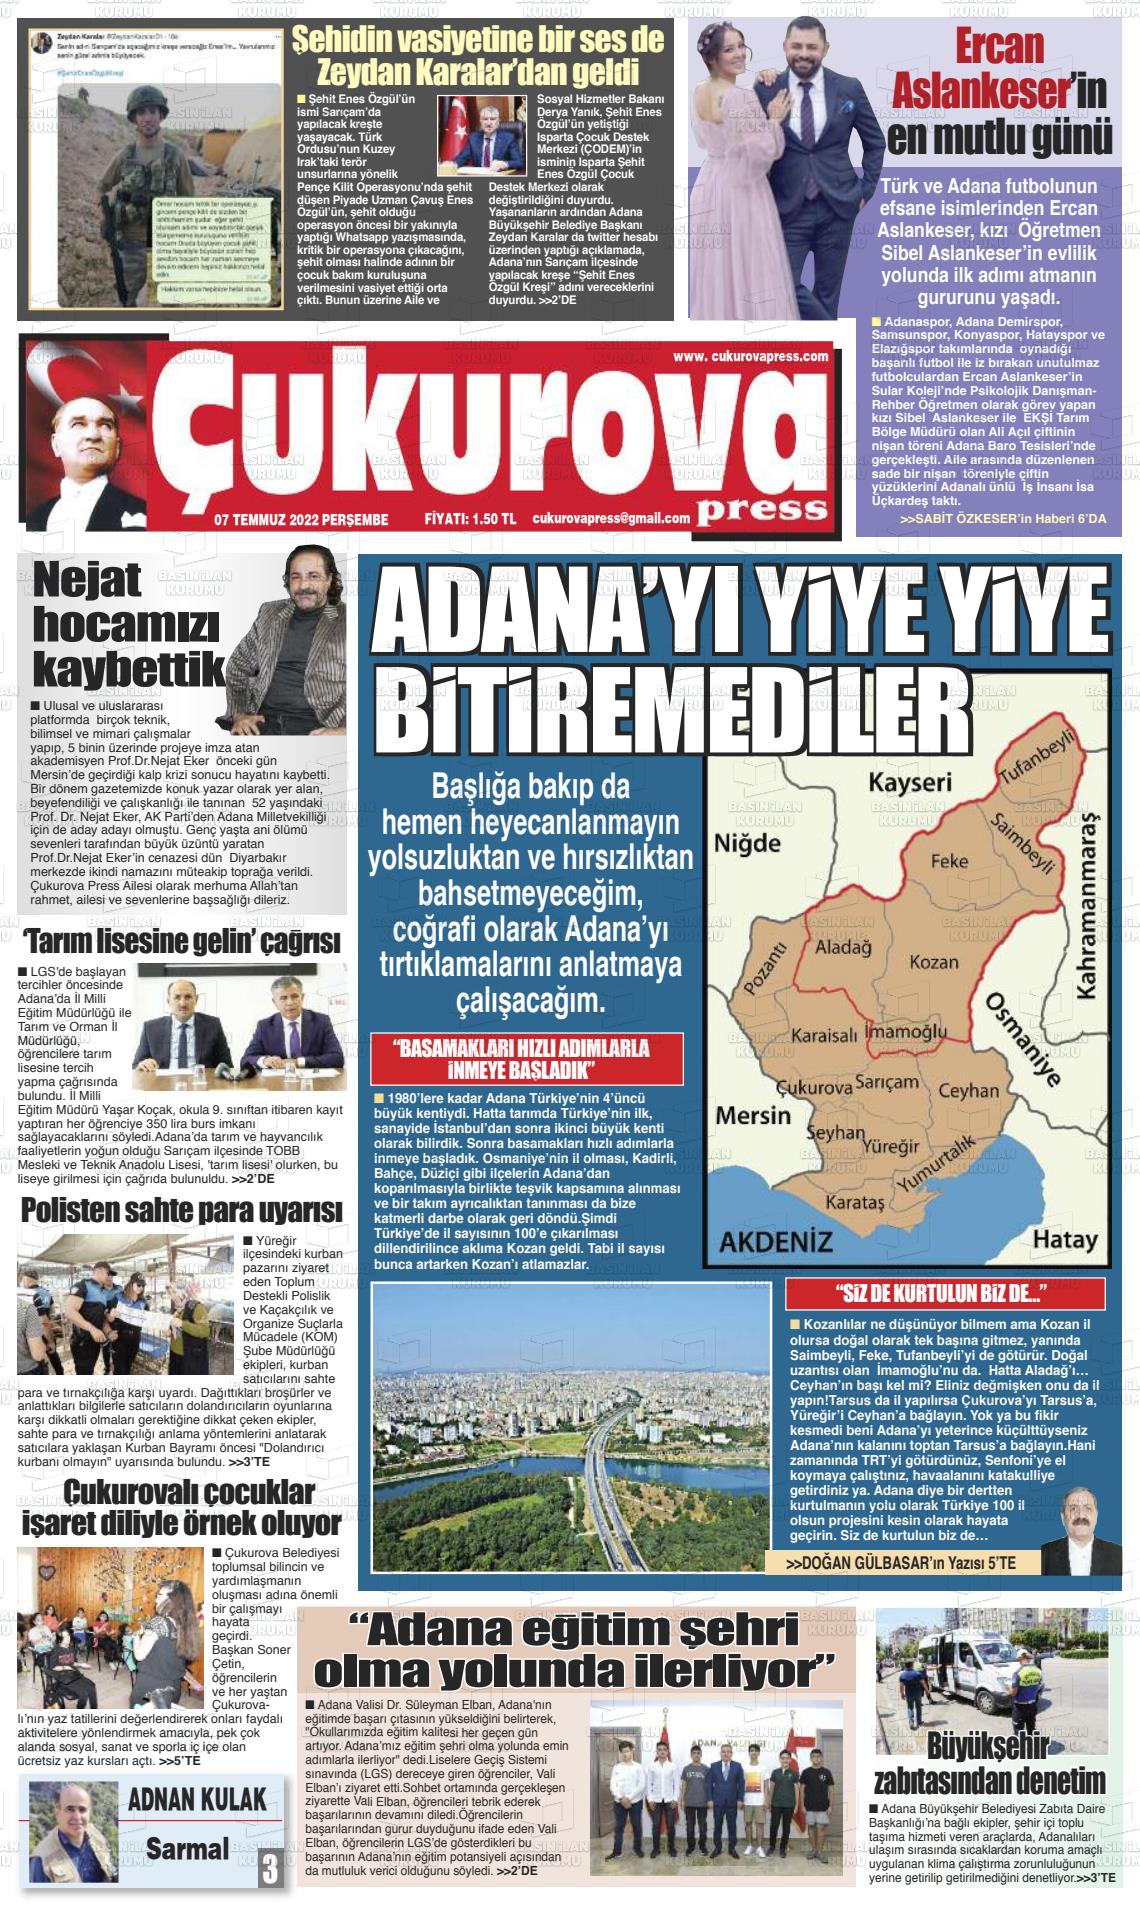 07 Temmuz 2022 Çukurova Press Gazete Manşeti